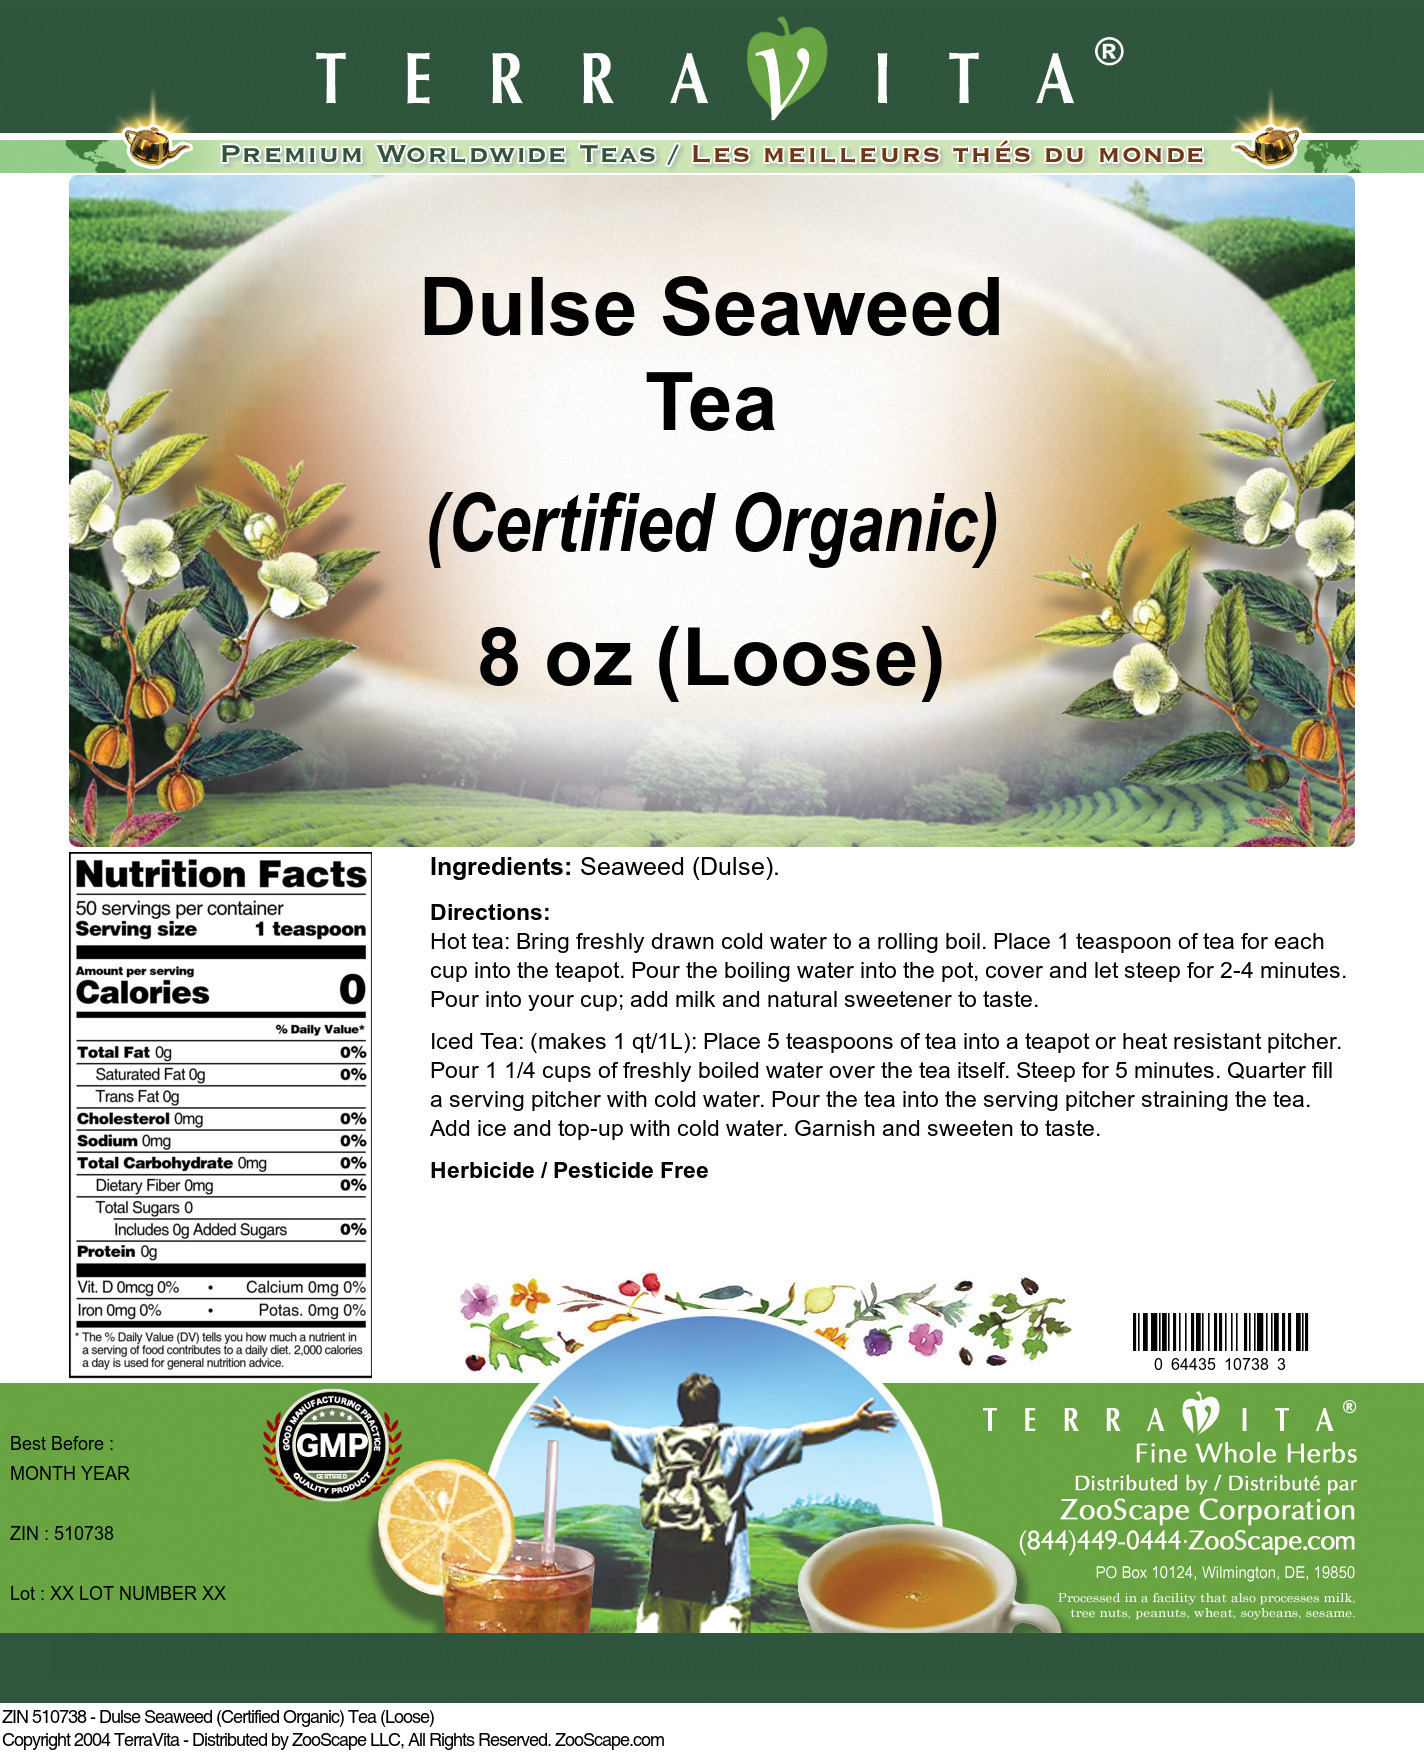 Dulse Seaweed (Certified Organic) Tea (Loose) - Label